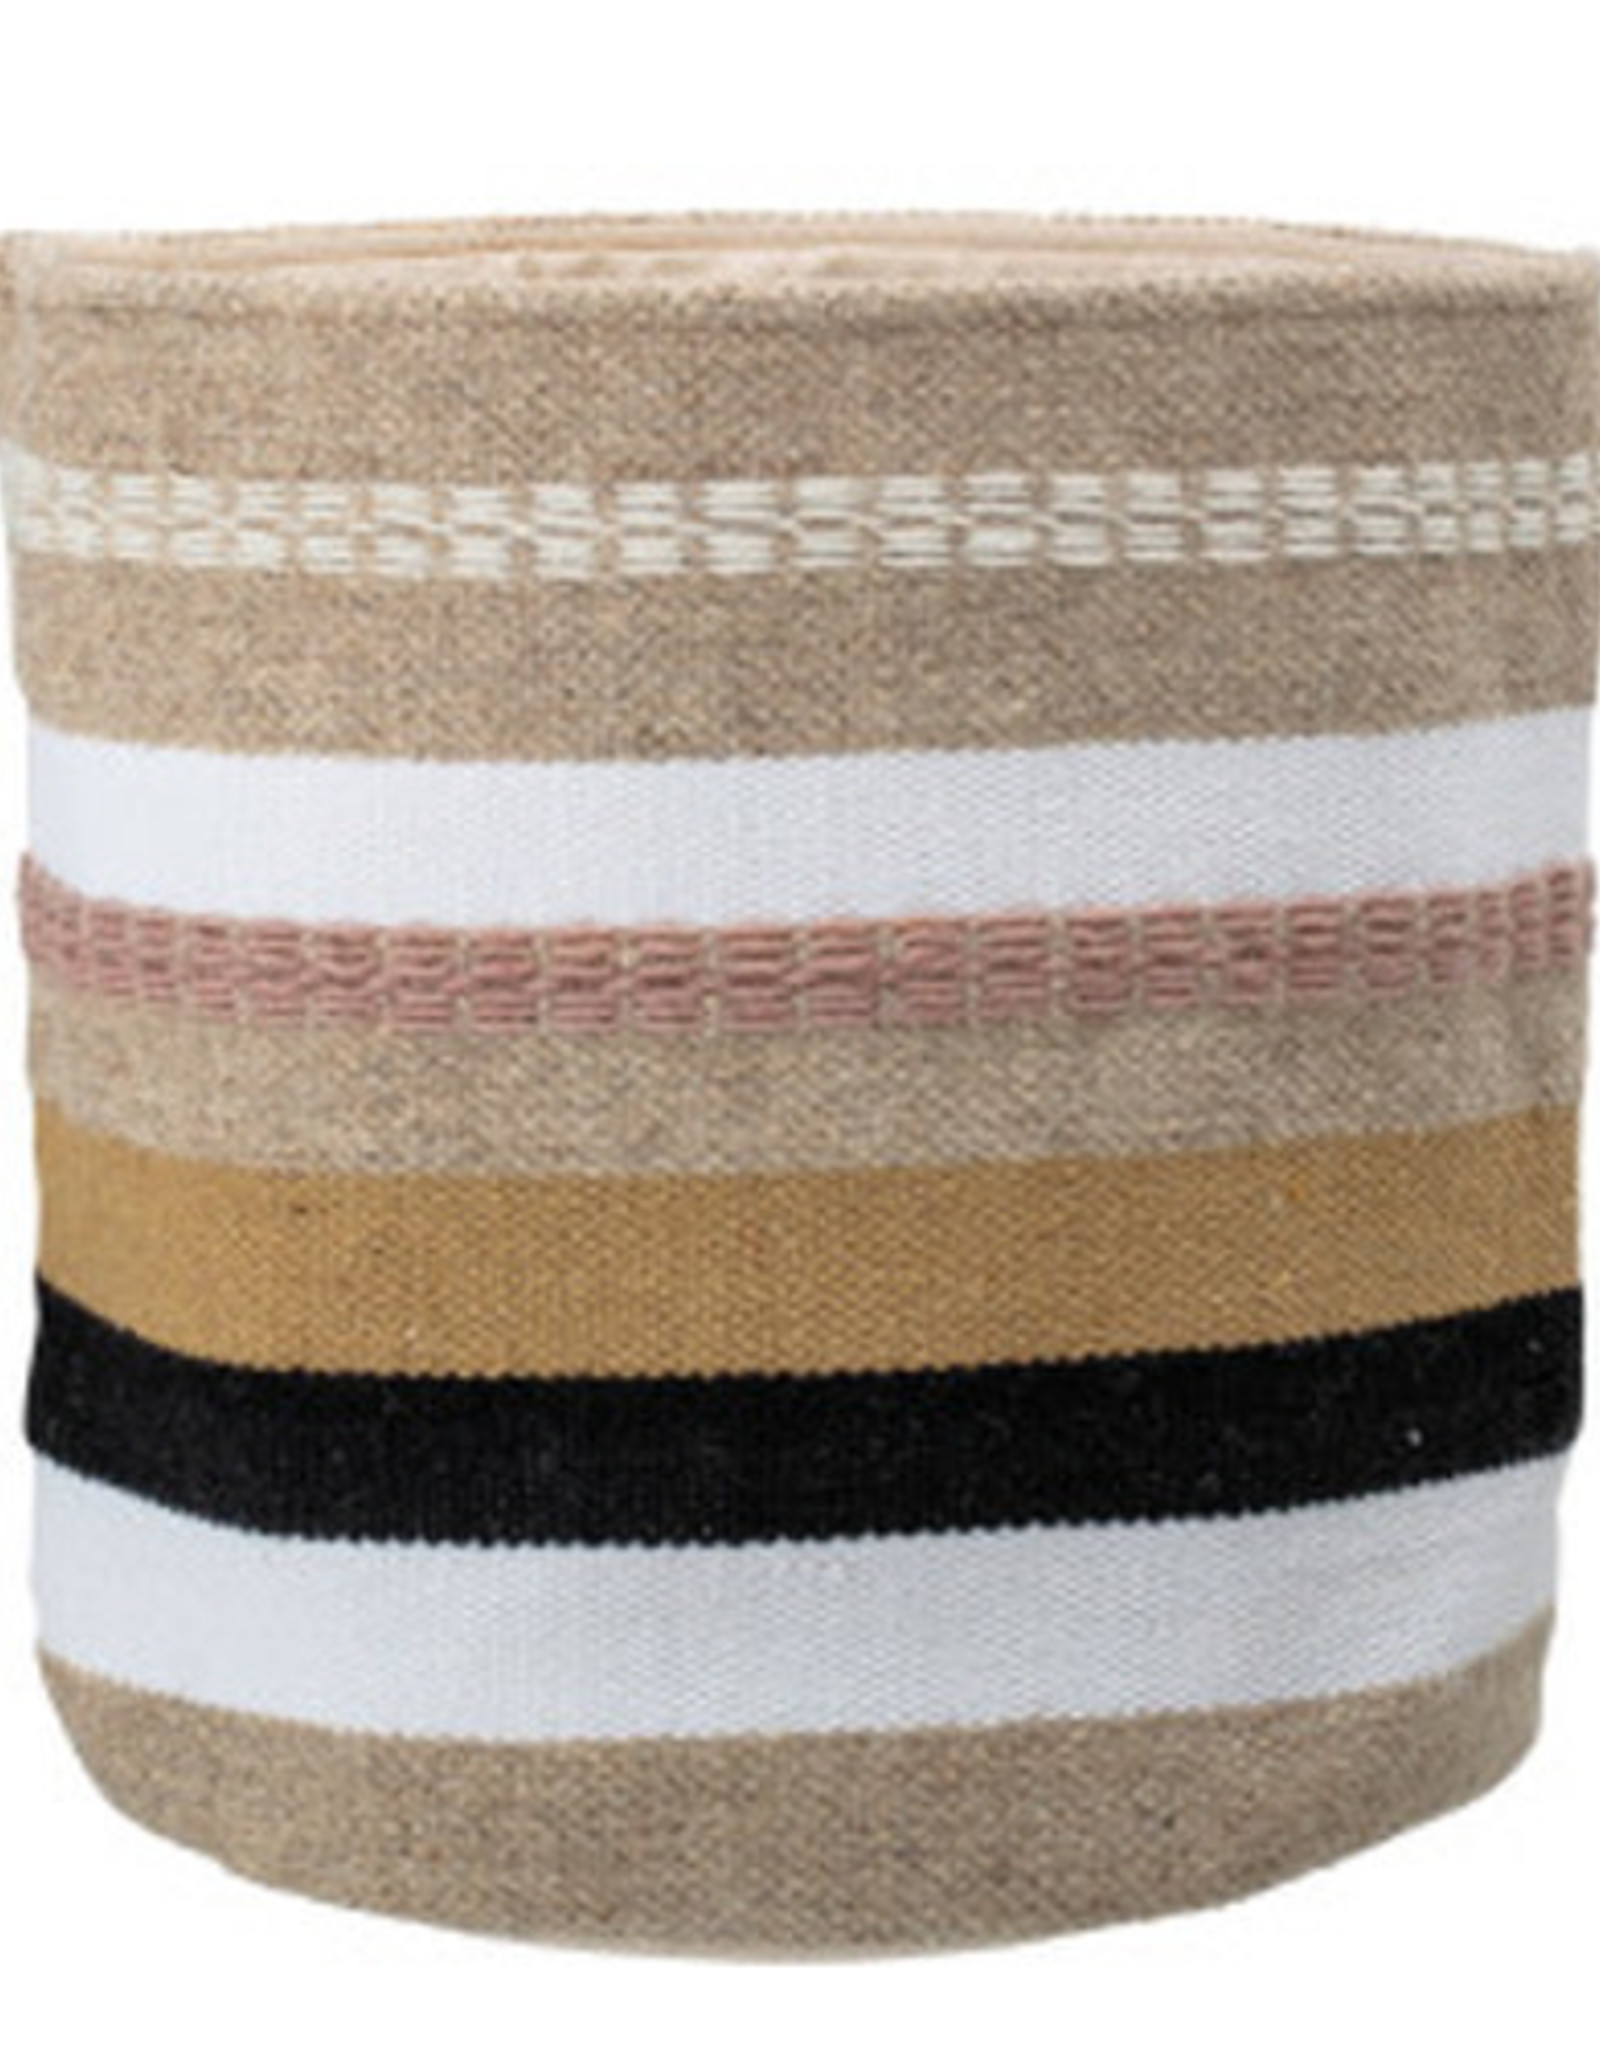 Woven Wool & Cotton Basket w/ Stripes